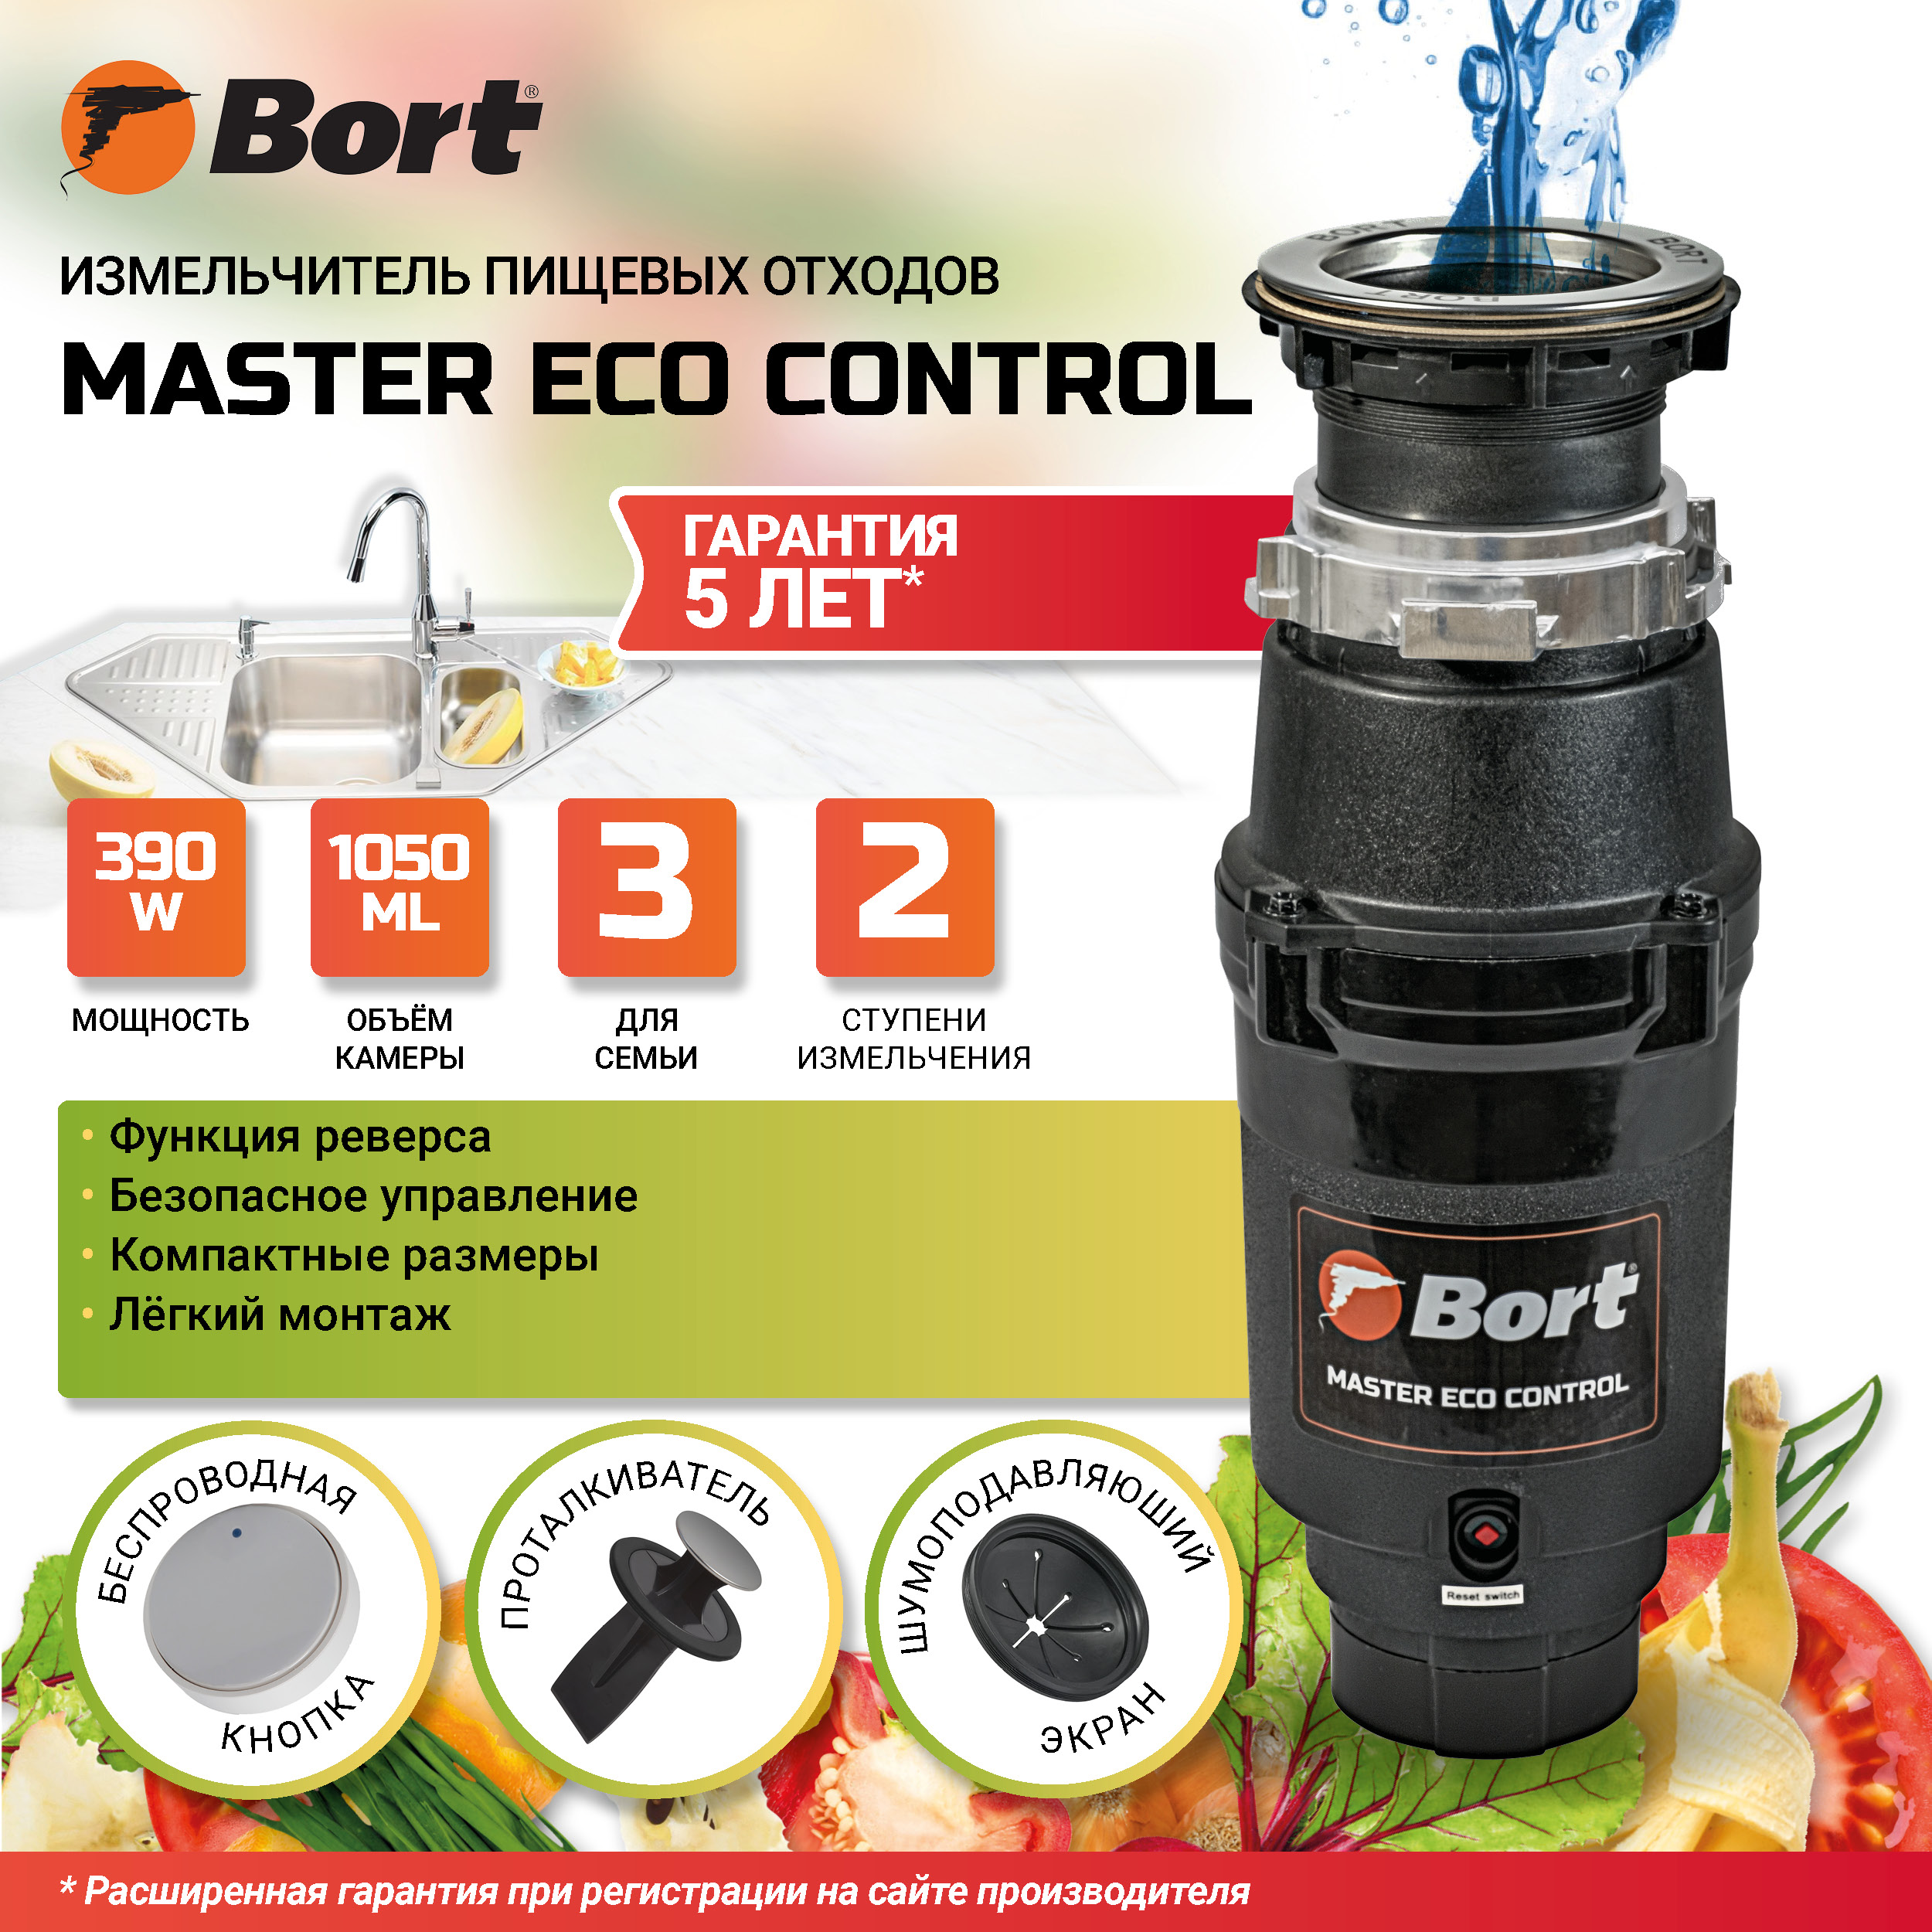 Измельчитель пищевых отходов BORT MASTER ECO Control измельчитель пищевых отходов bort titan max power 91275790 серебристый